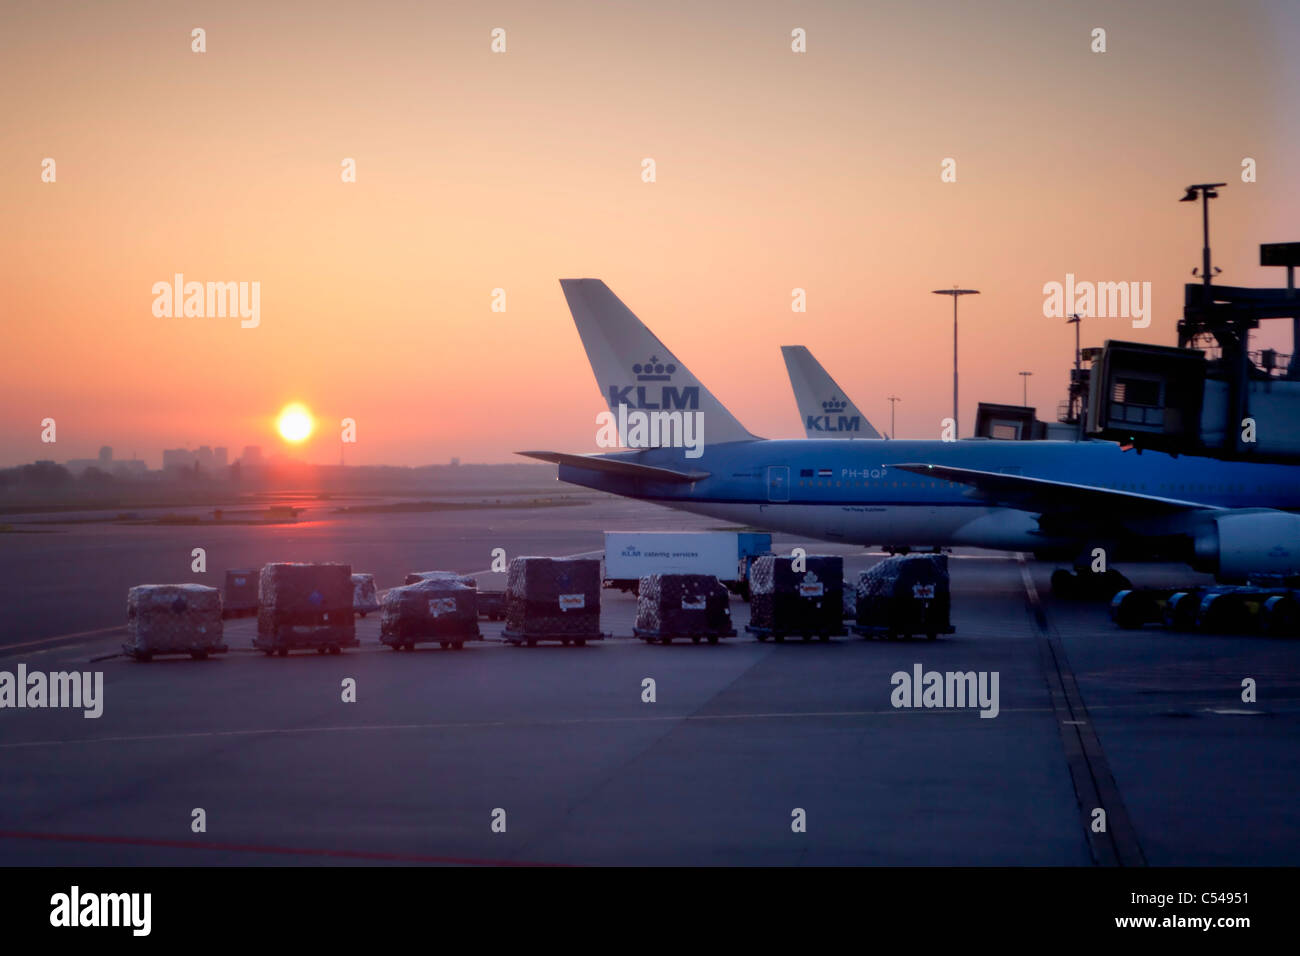 Les Pays-Bas, Amsterdam, les avions de KLM à l'aéroport de Schiphol au lever du soleil. Banque D'Images